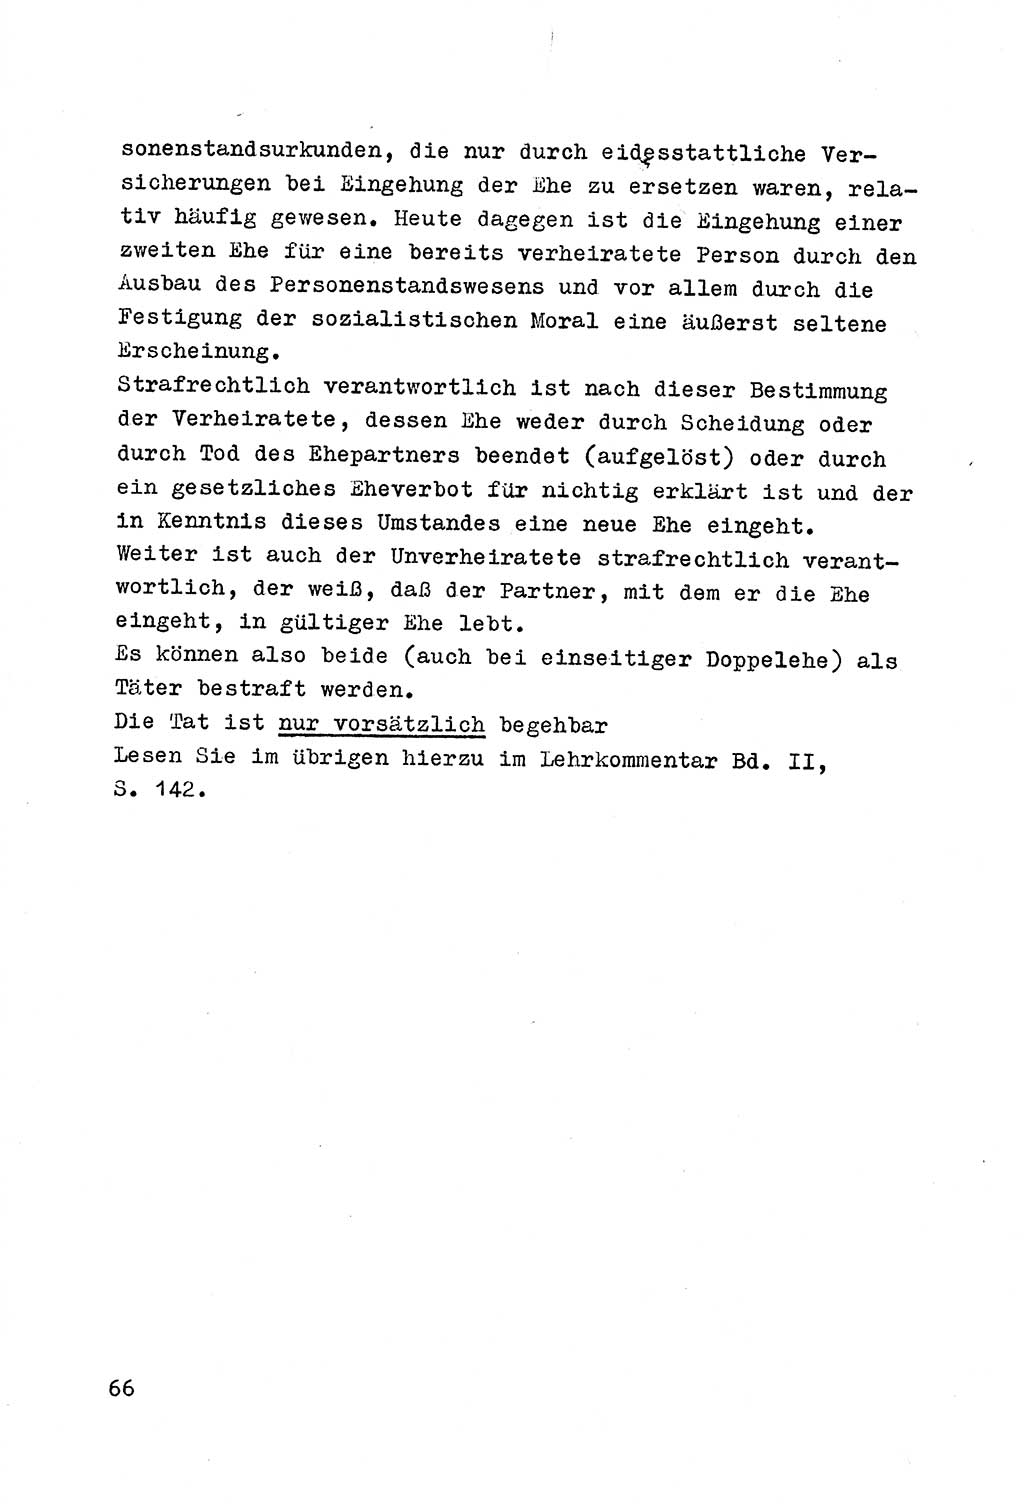 Strafrecht der DDR (Deutsche Demokratische Republik), Besonderer Teil, Lehrmaterial, Heft 4 1969, Seite 66 (Strafr. DDR BT Lehrmat. H. 4 1969, S. 66)